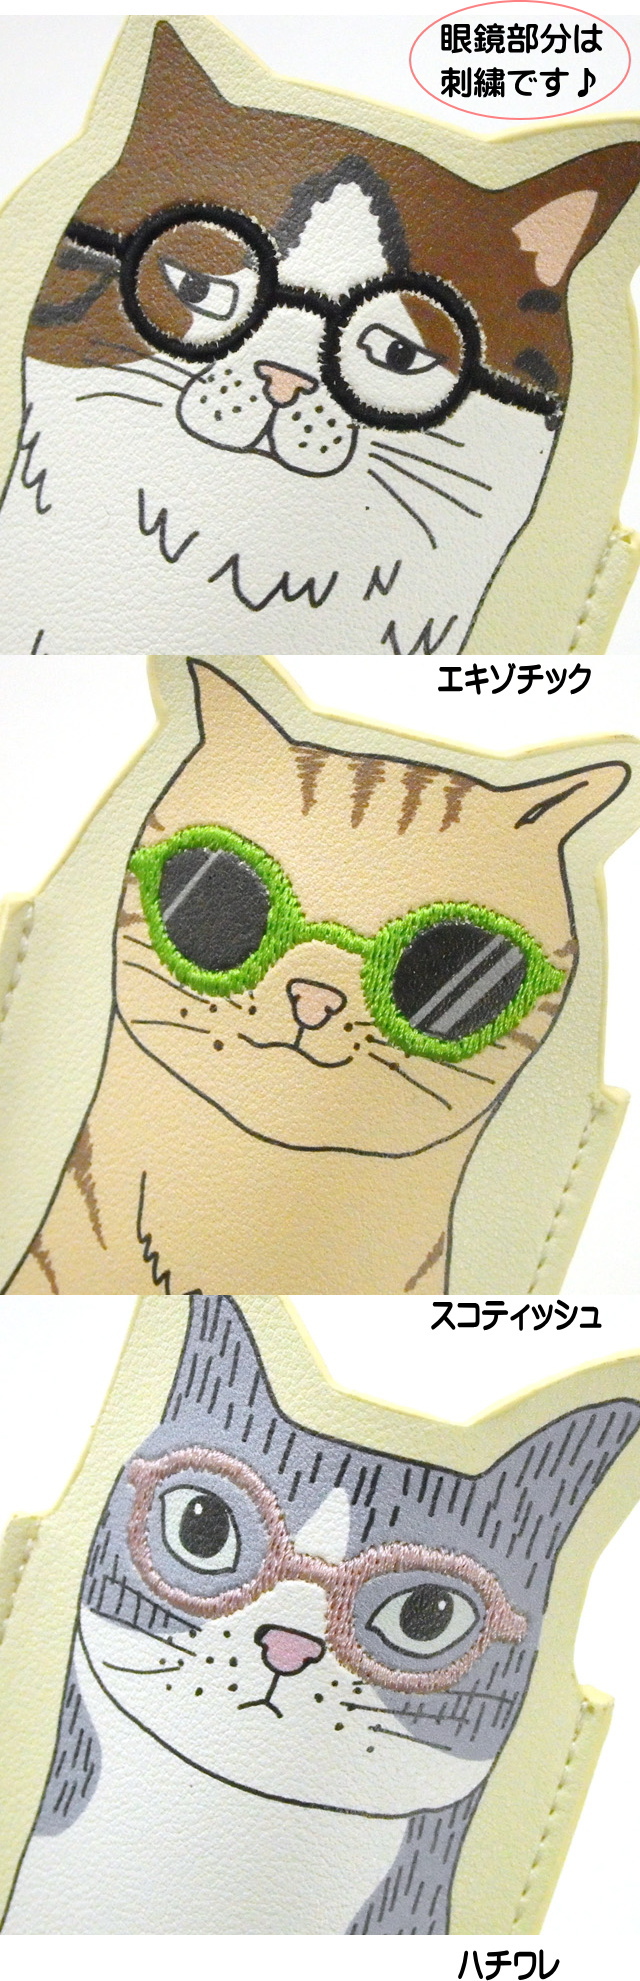 メガネケース 猫 スコティッシュ セトクラフト スリム 薄型 軽い 人気